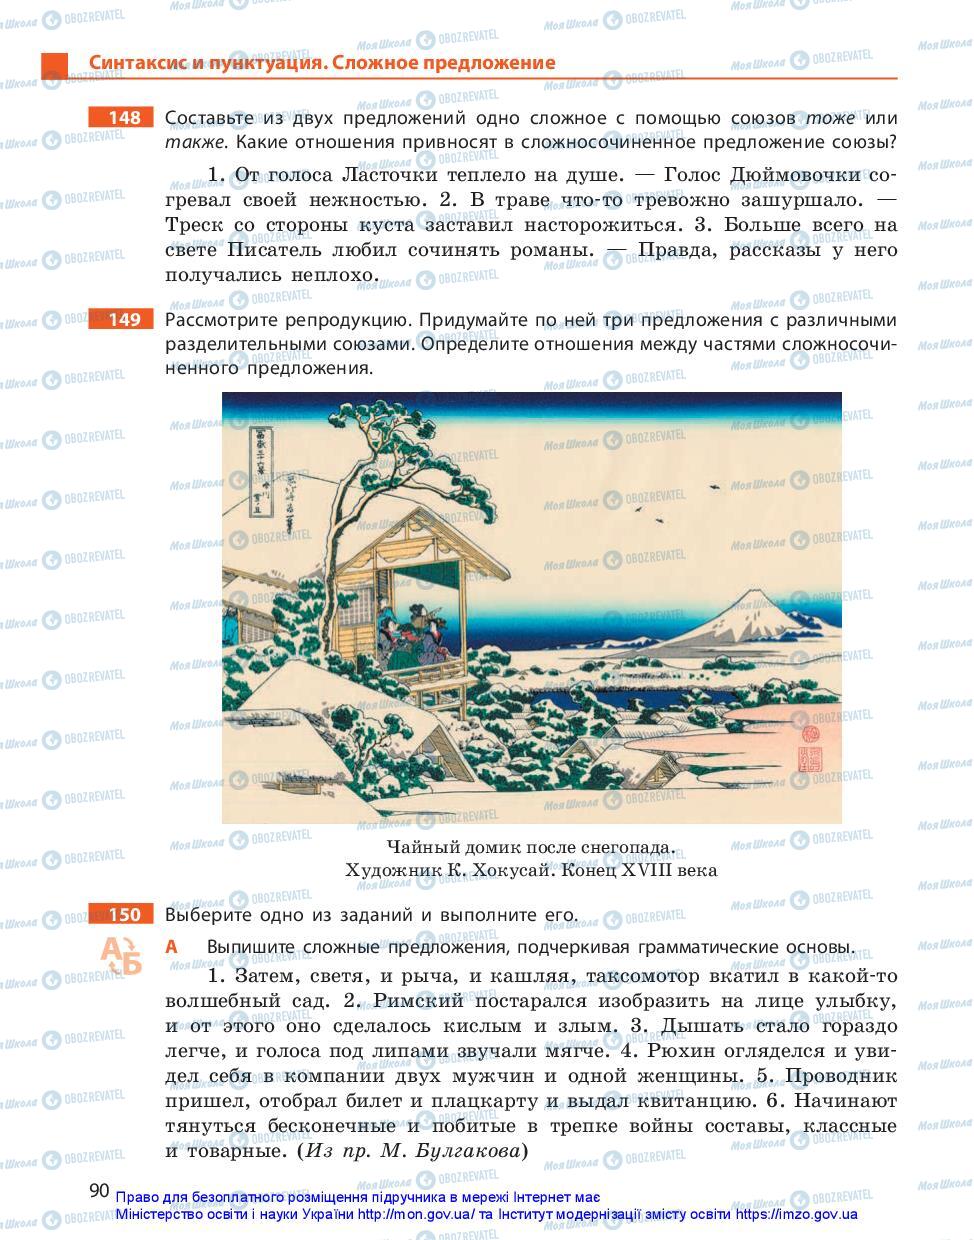 Учебники Русский язык 11 класс страница 90